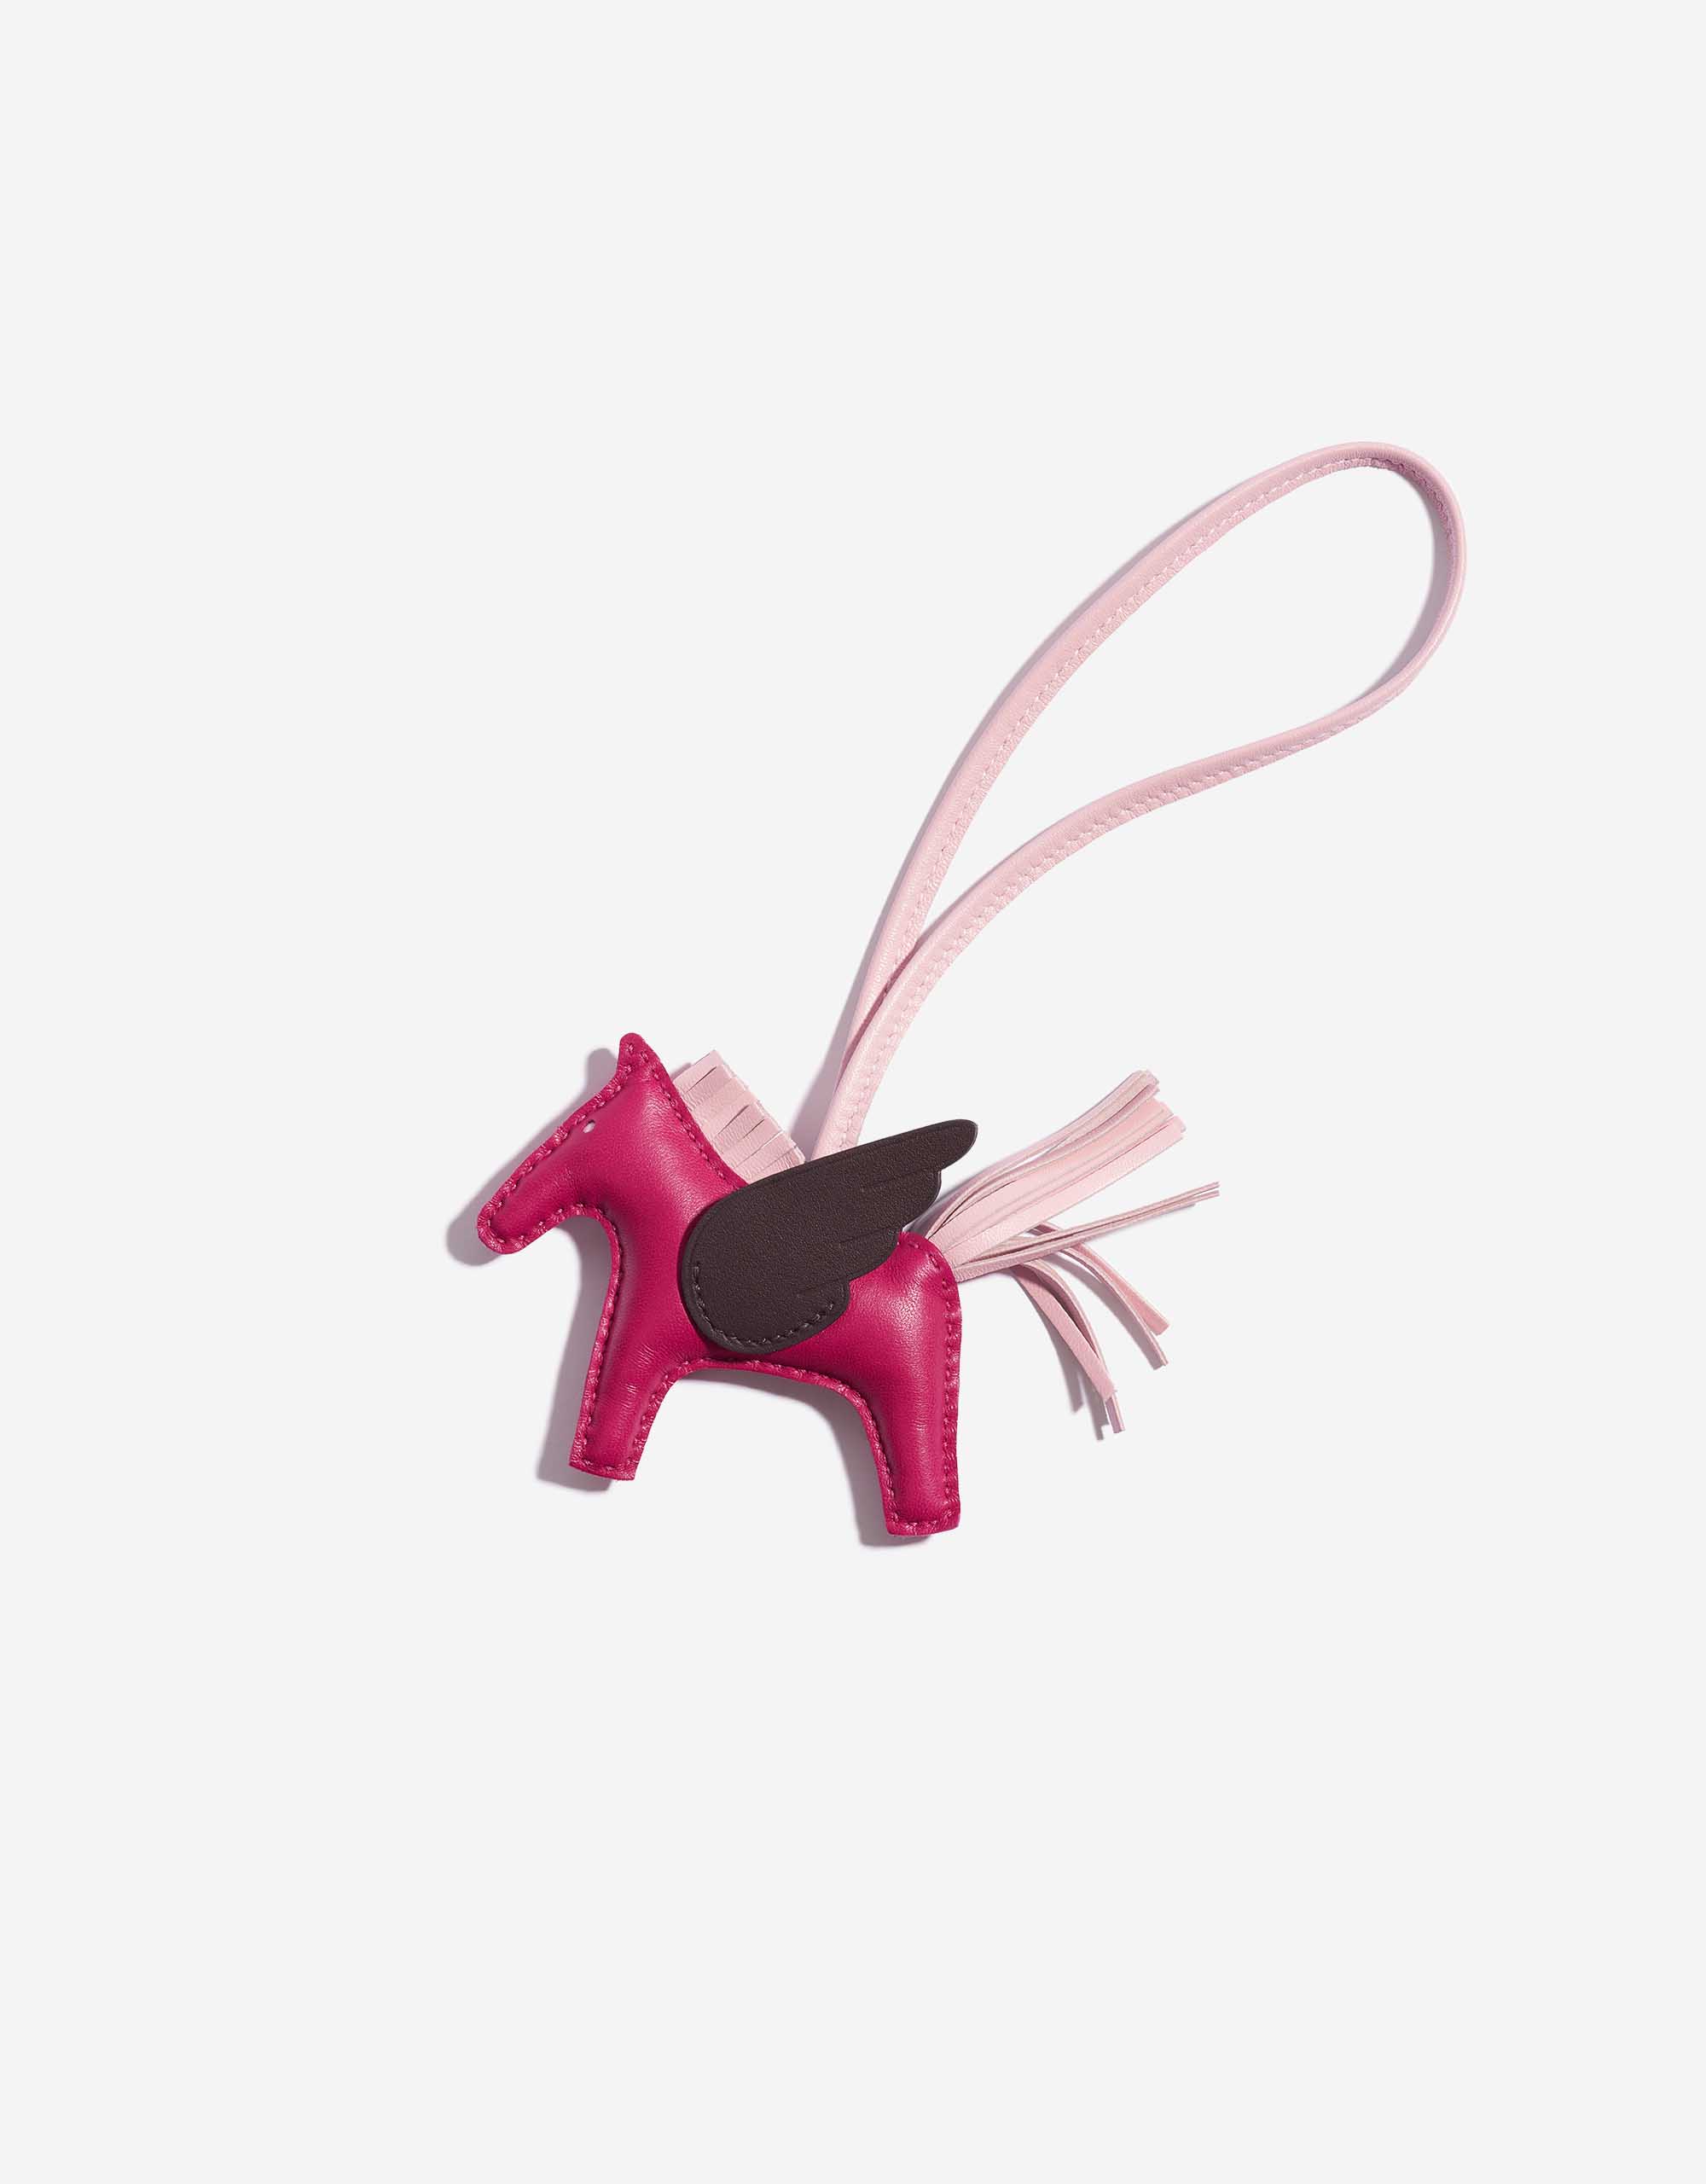 Hermes Framboise/Rose Sakura/Rouge Sellier Pegase PM Bag Charm